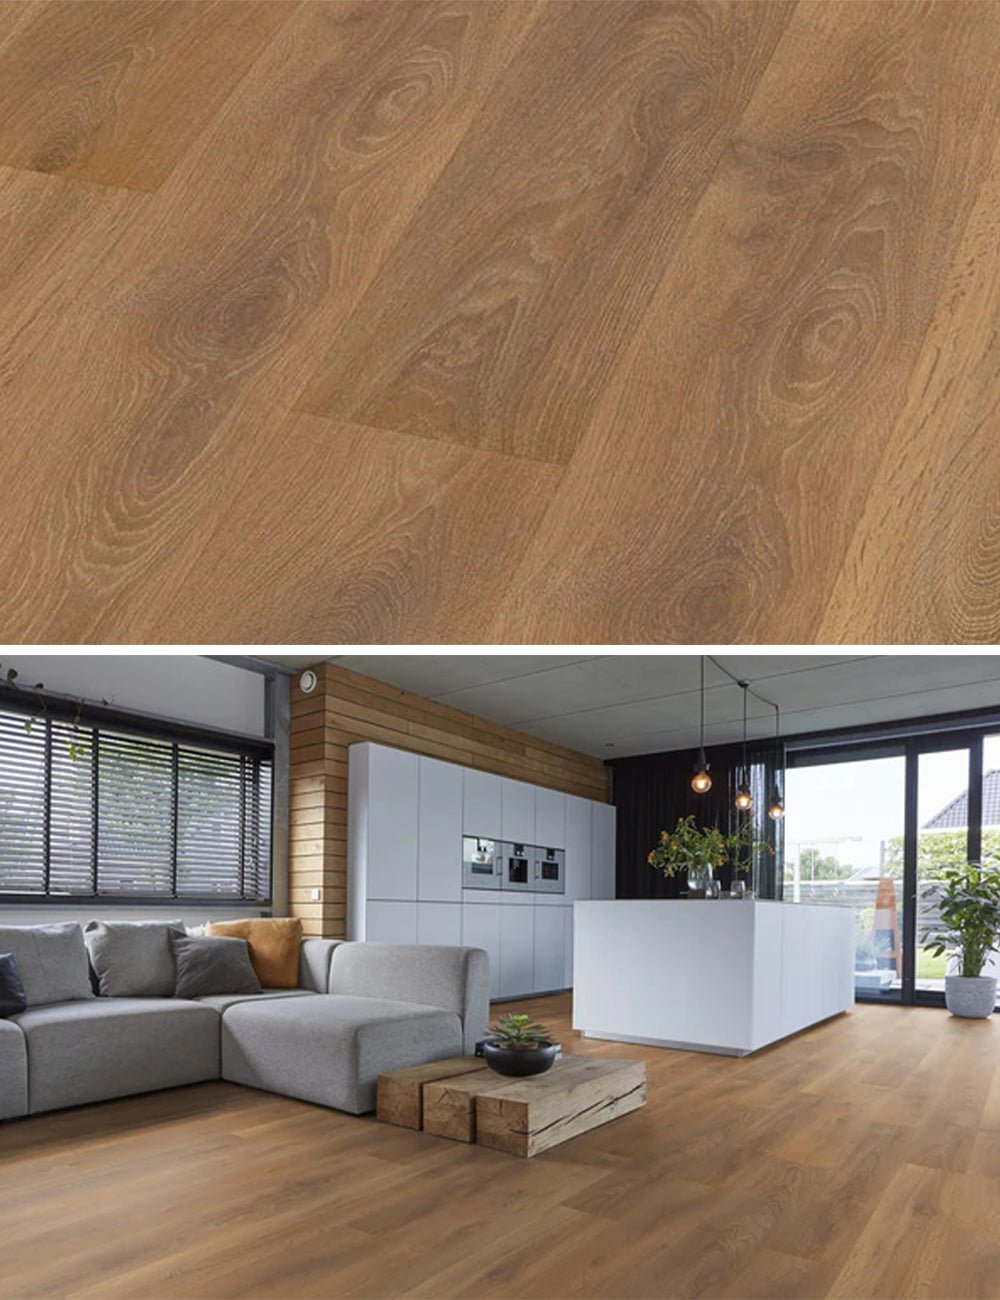 Floorlife Stratifié Woodlook Manhatten Chêne brun chaud 8601 - Solza.fr